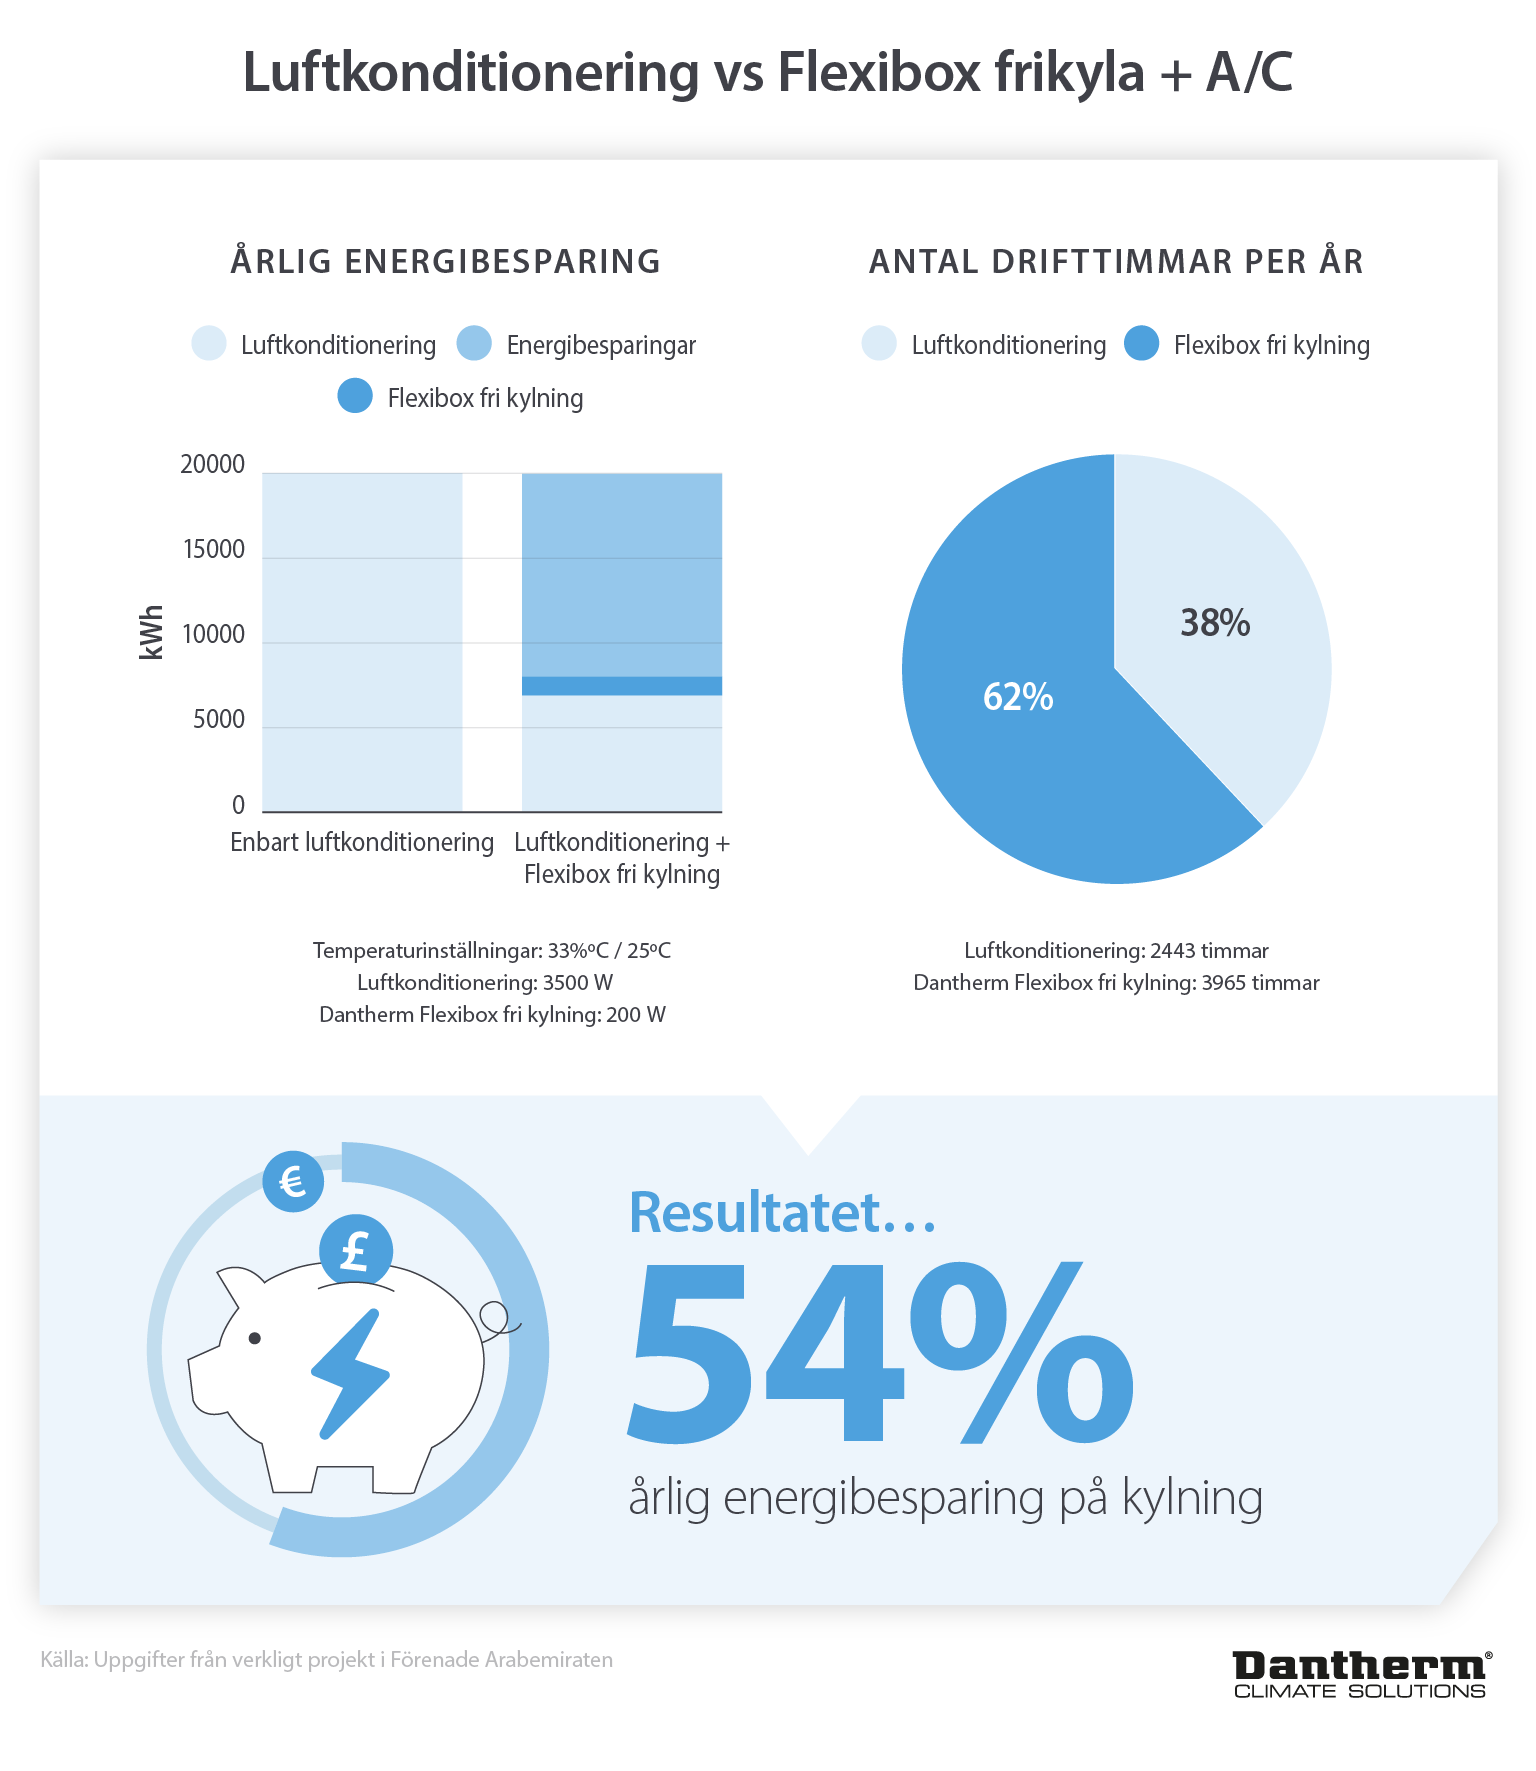 Statistik som visar 54 % årlig energibesparing från flexibox frikylning jämfört med luftkonditionering - Infographic